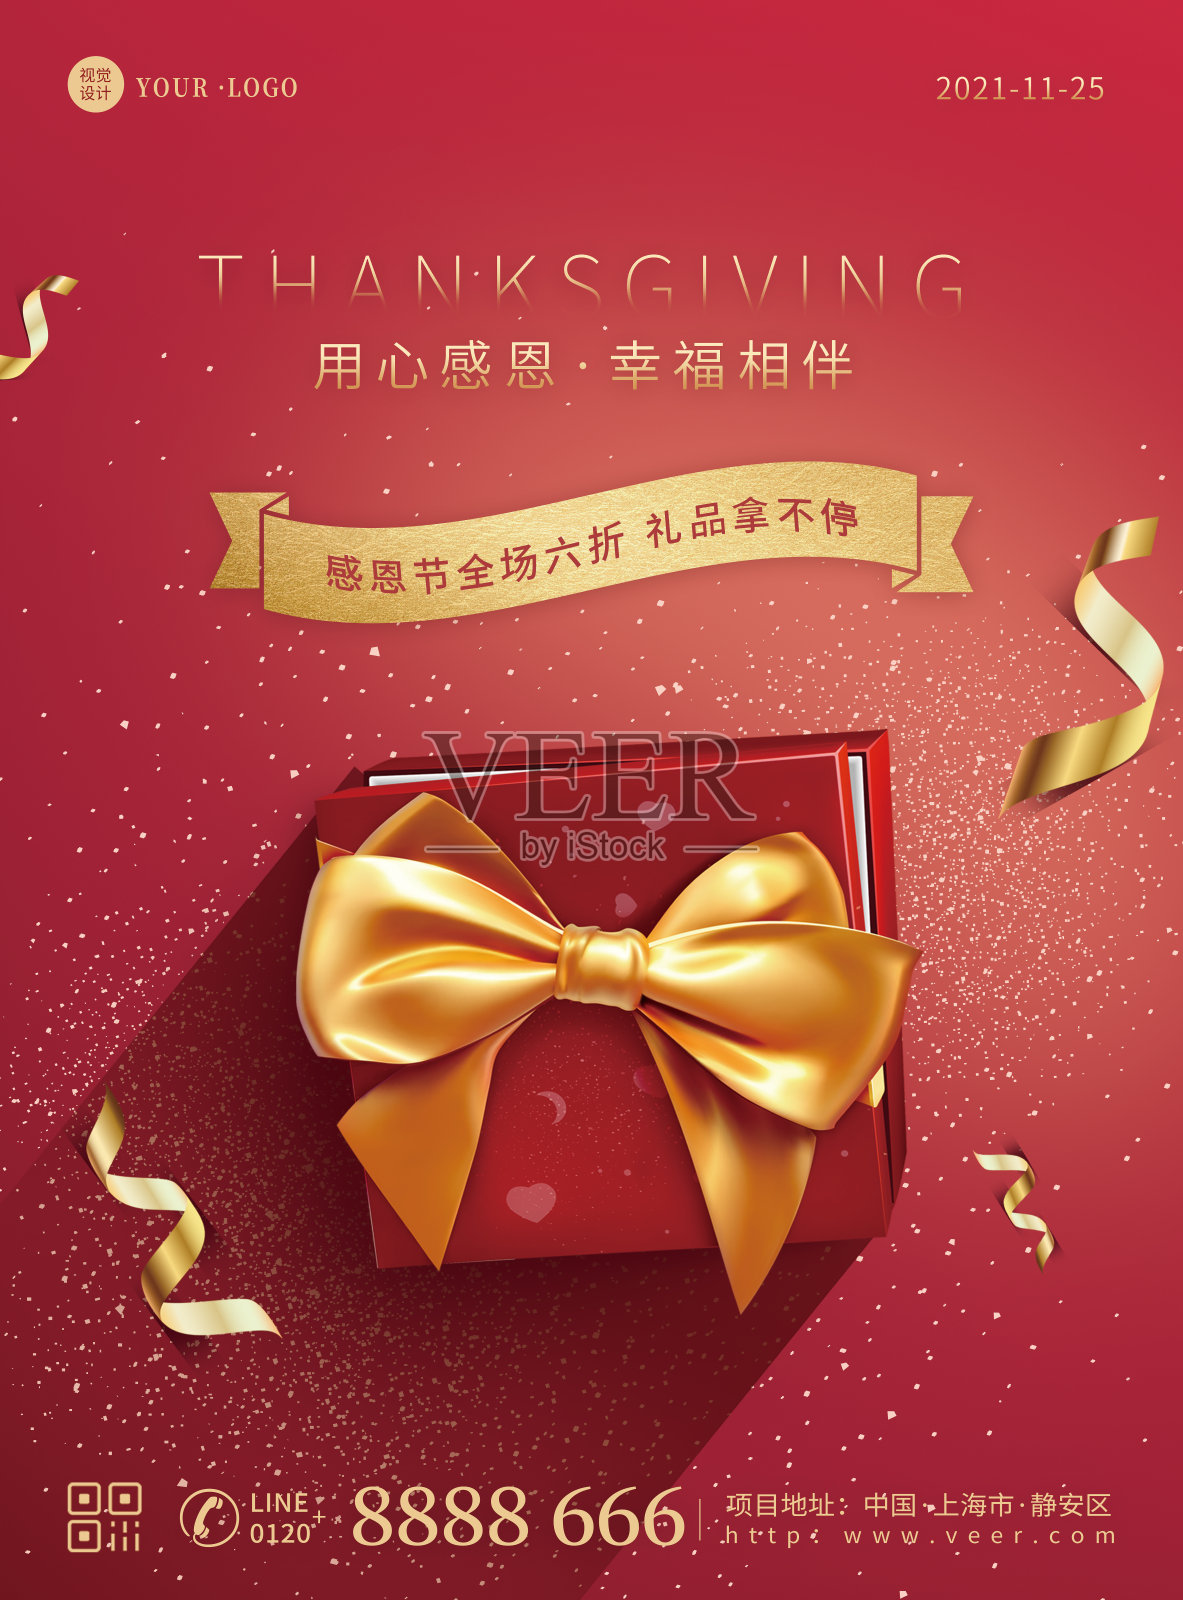 红色大气礼盒质感感恩节节日营销祝福平面印刷海报设计模板素材